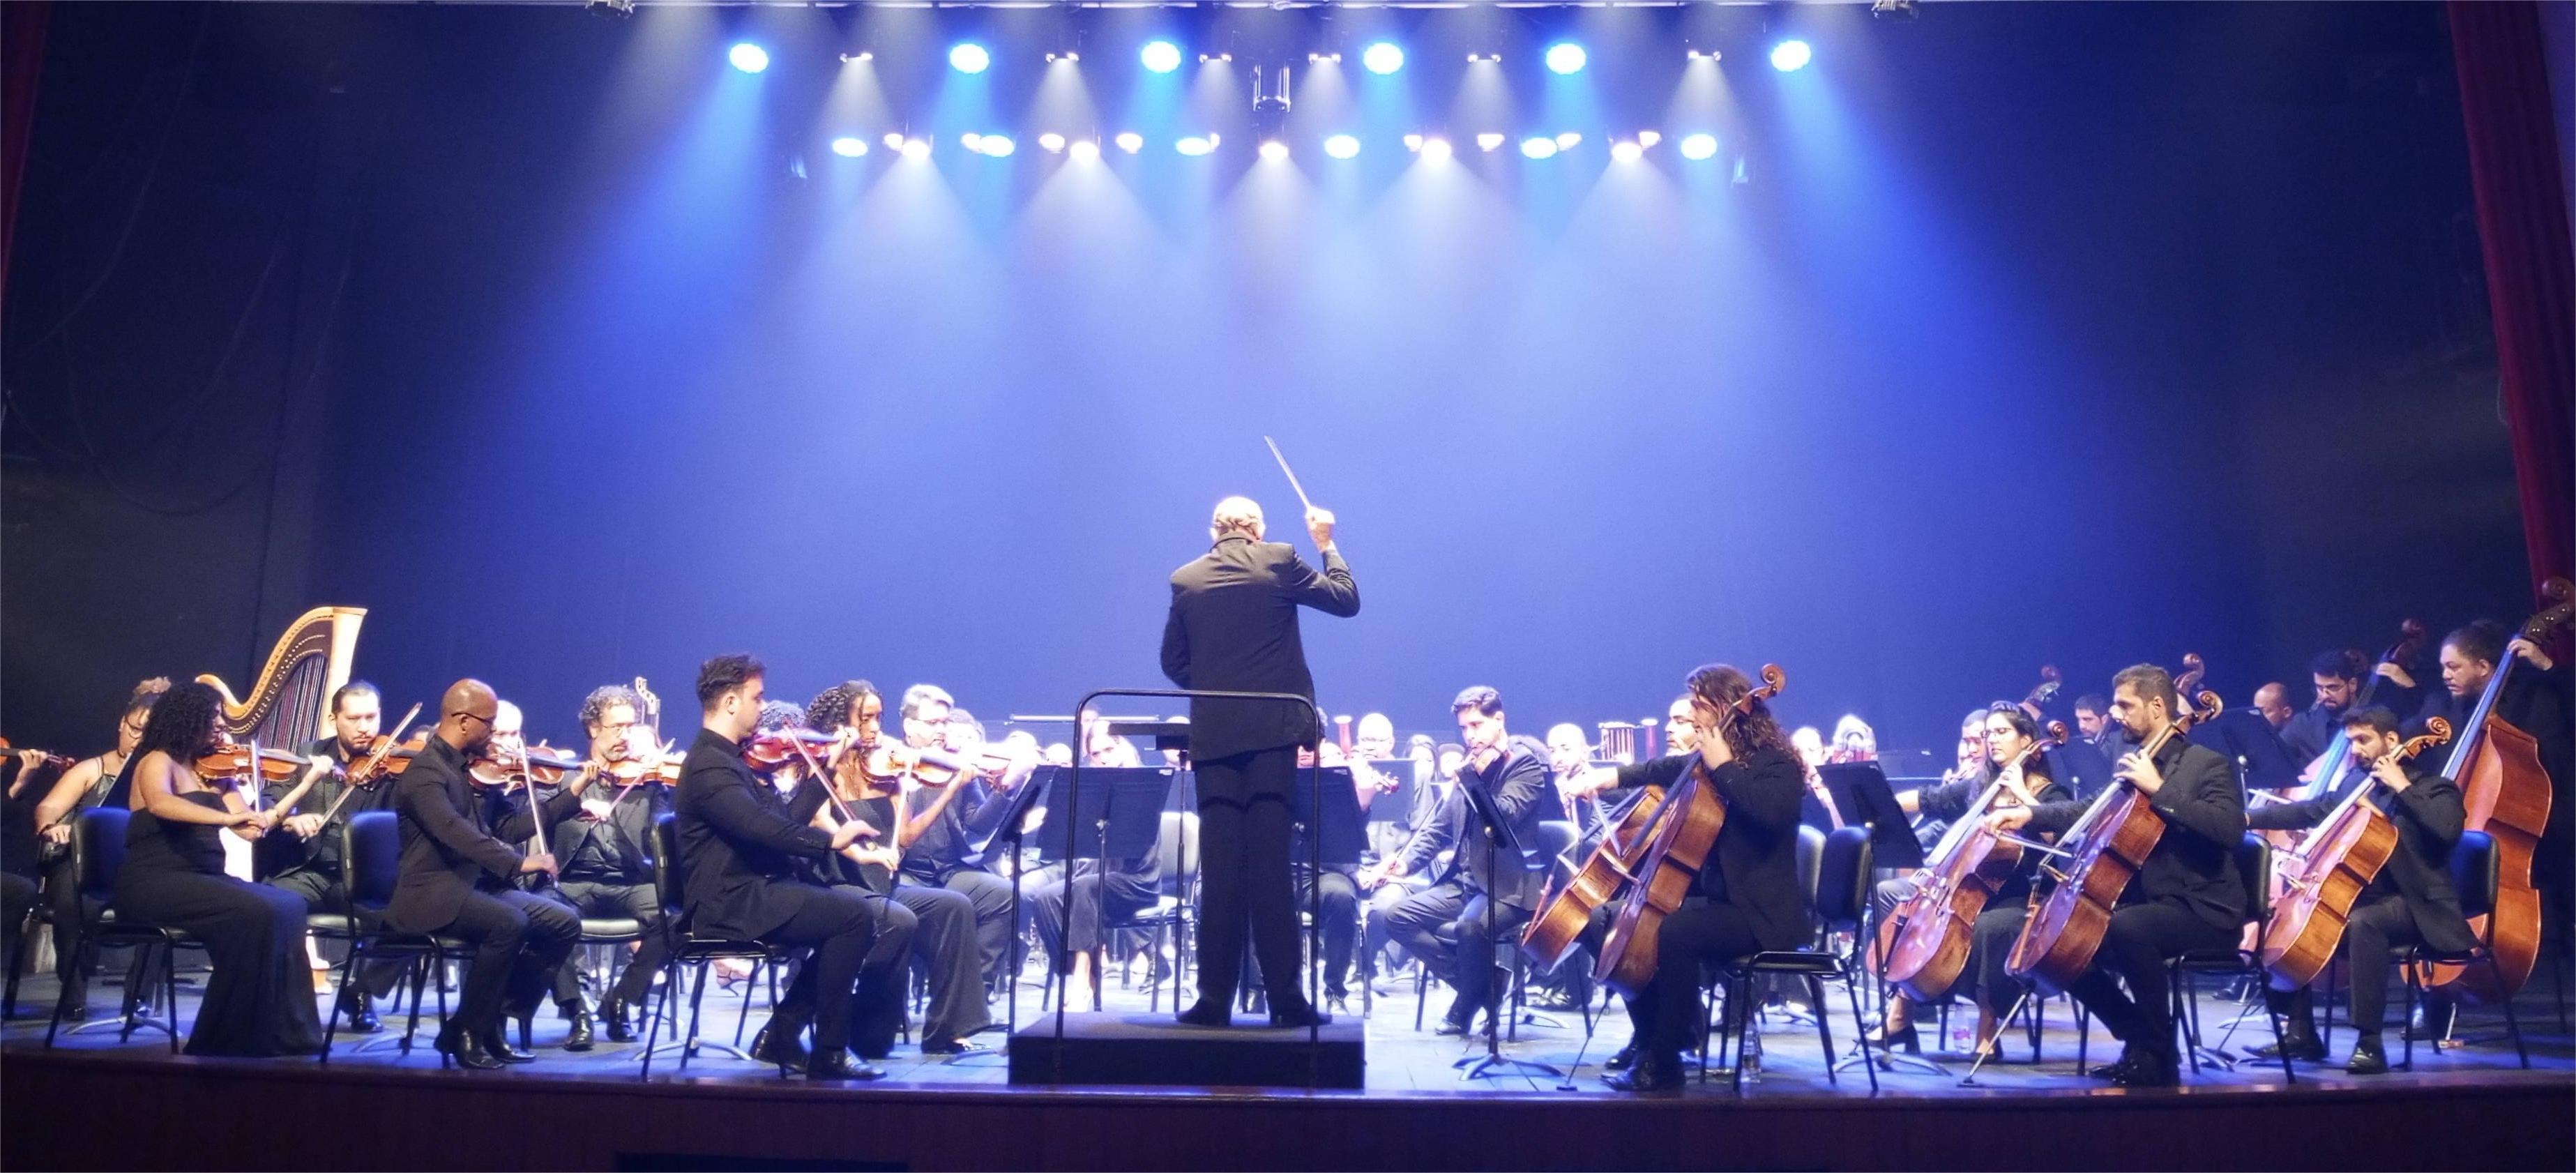 Foto da orquestra sinfônica com o maestro de costas regendo os músicos a sua frente